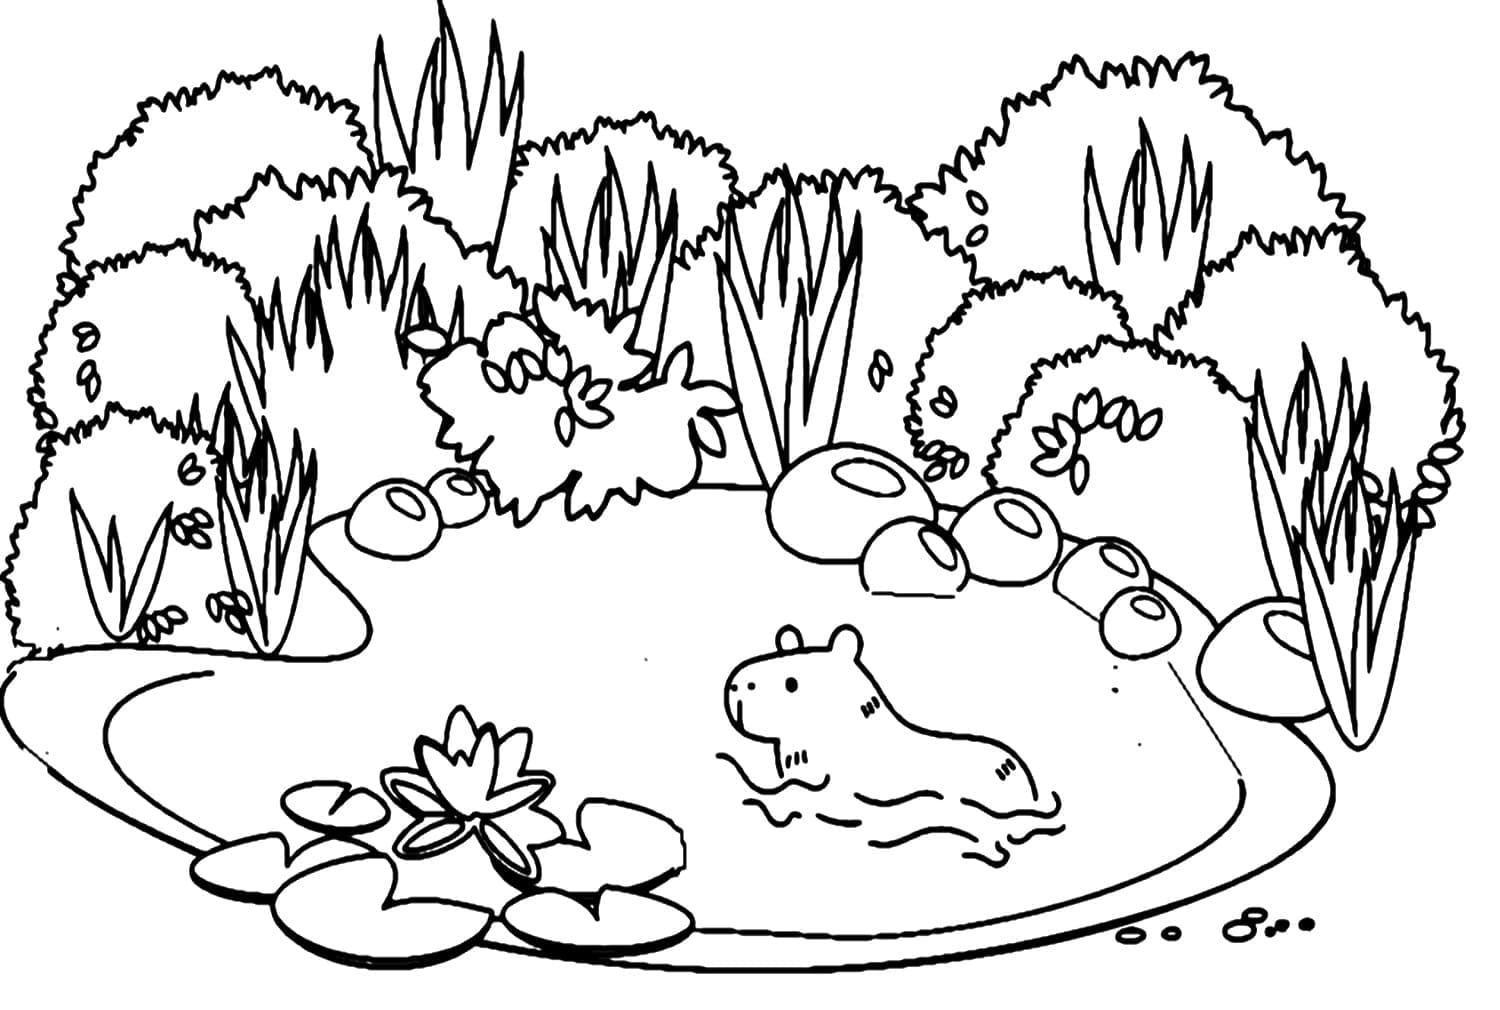 Capybara de Natation coloring page